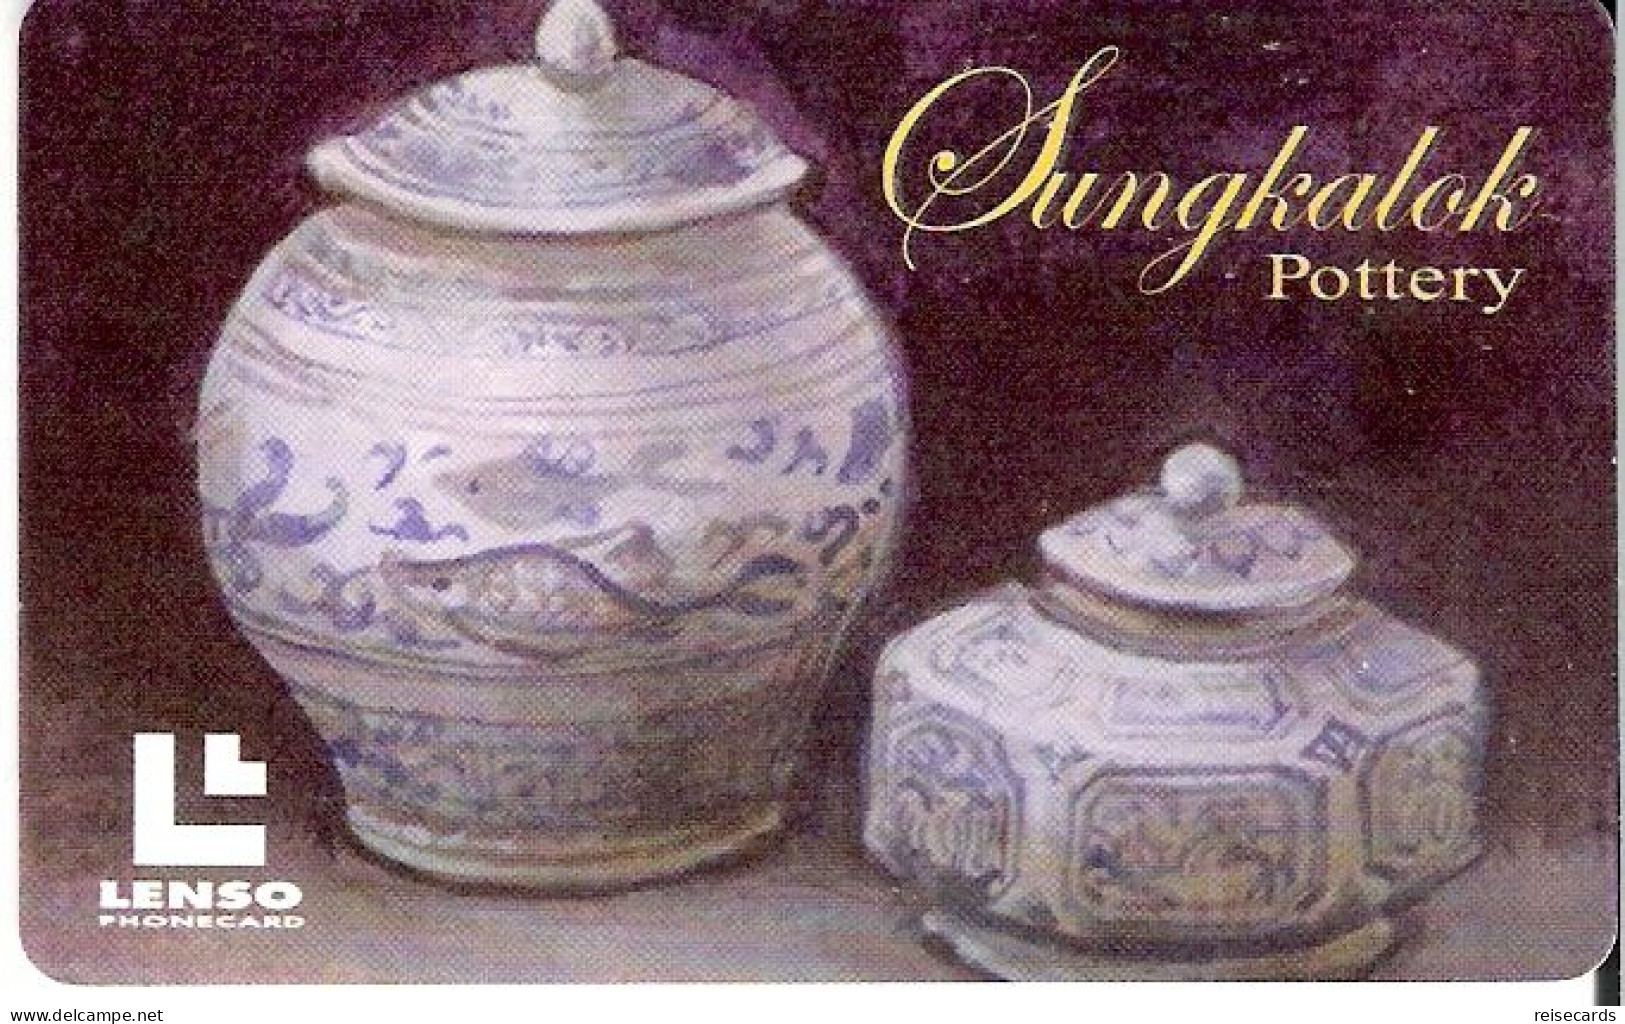 Thailand: Lenso - Sungkalok Pottery - Tailandia